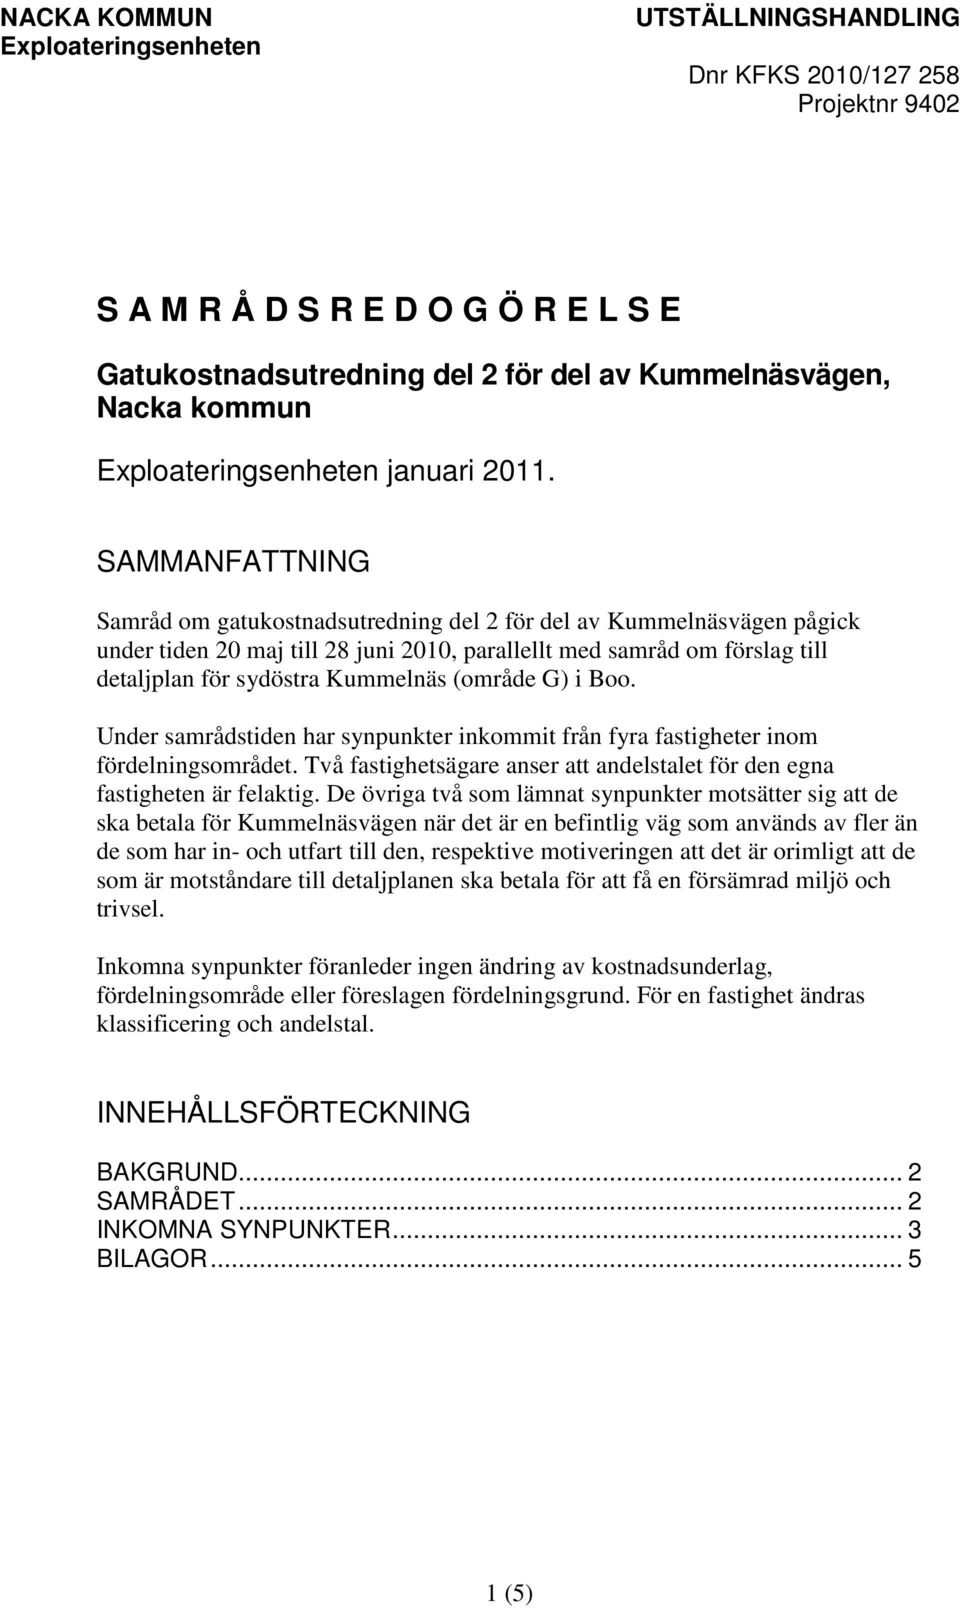 SAMMANFATTNING Samråd om gatukostnadsutredning del 2 för del av Kummelnäsvägen pågick under tiden 20 maj till 28 juni 2010, parallellt med samråd om förslag till detaljplan för sydöstra Kummelnäs